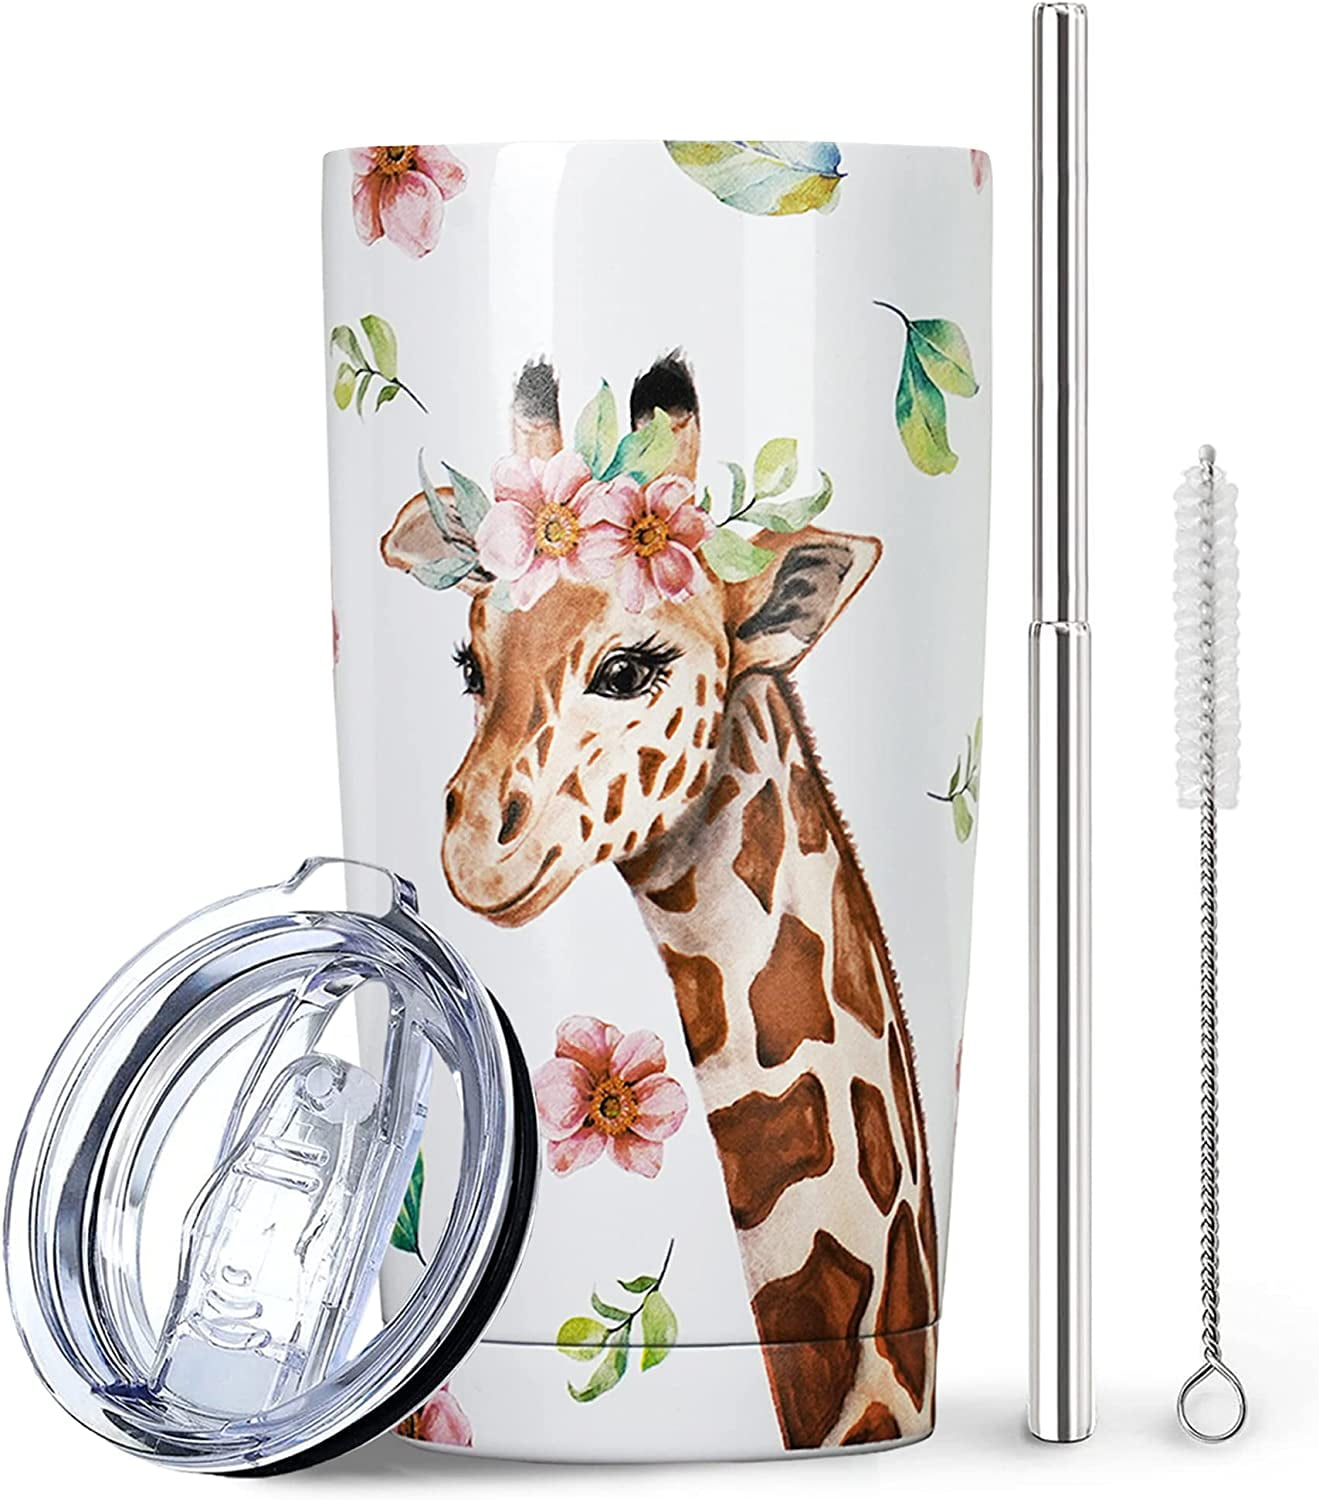 Giraffe Tumbler - 20 oz skinny (In Stock) – Beeutiful Creations by